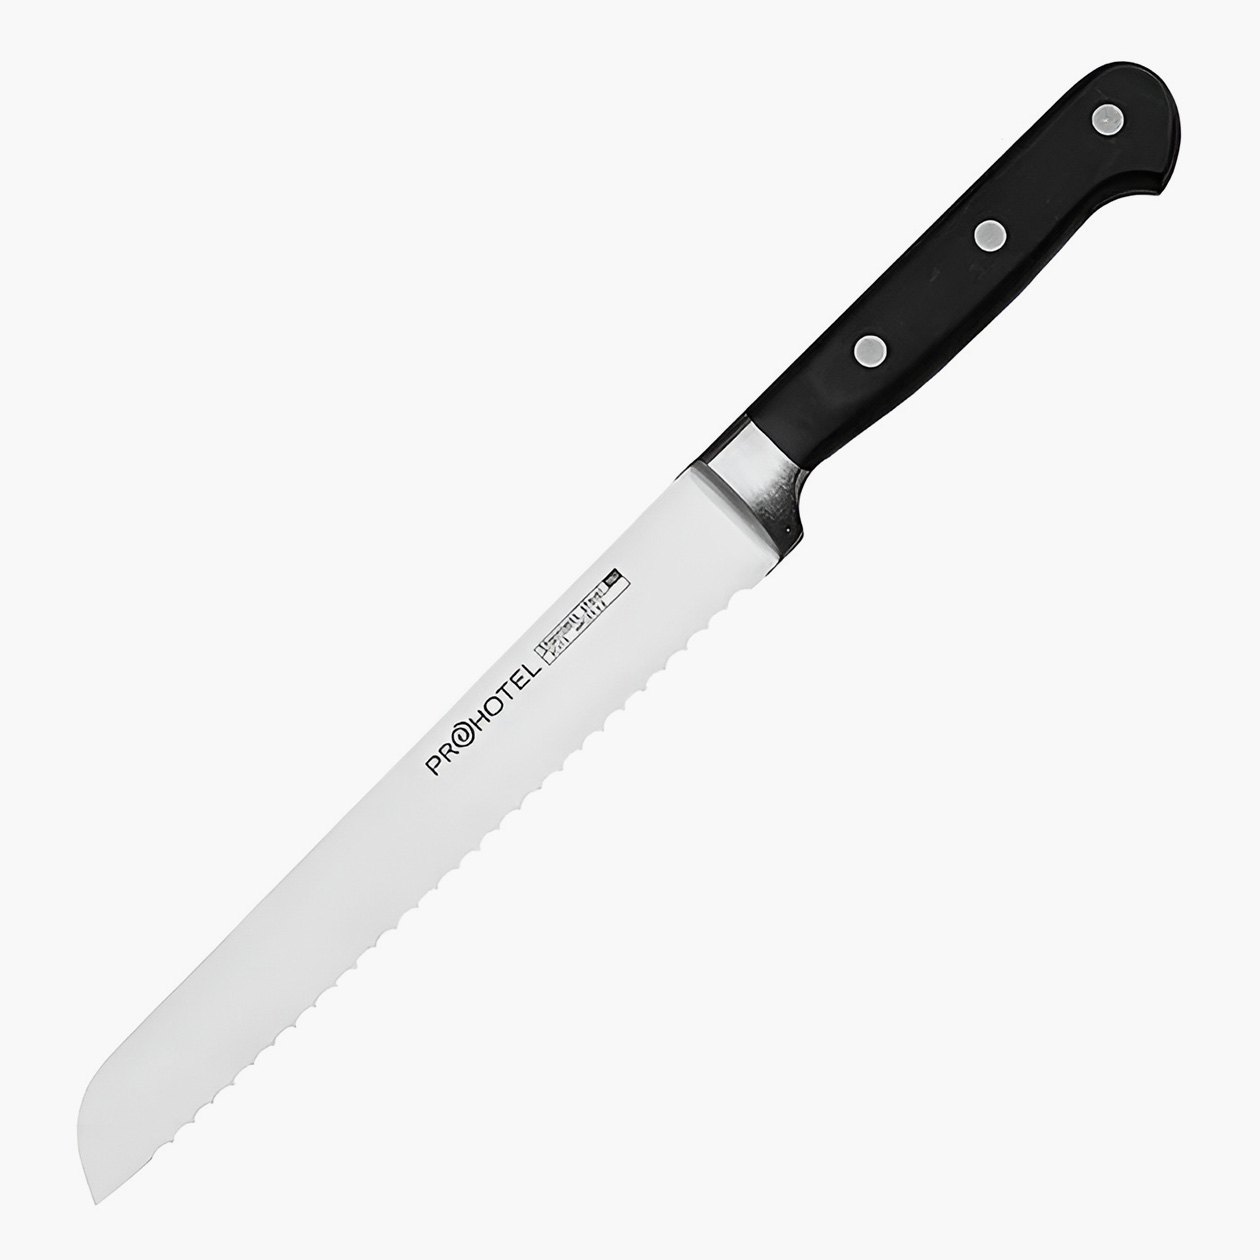 Подешевле: стальной нож для хлеба длиной 34 см за 2754 ₽. Источник: market.yandex.ru